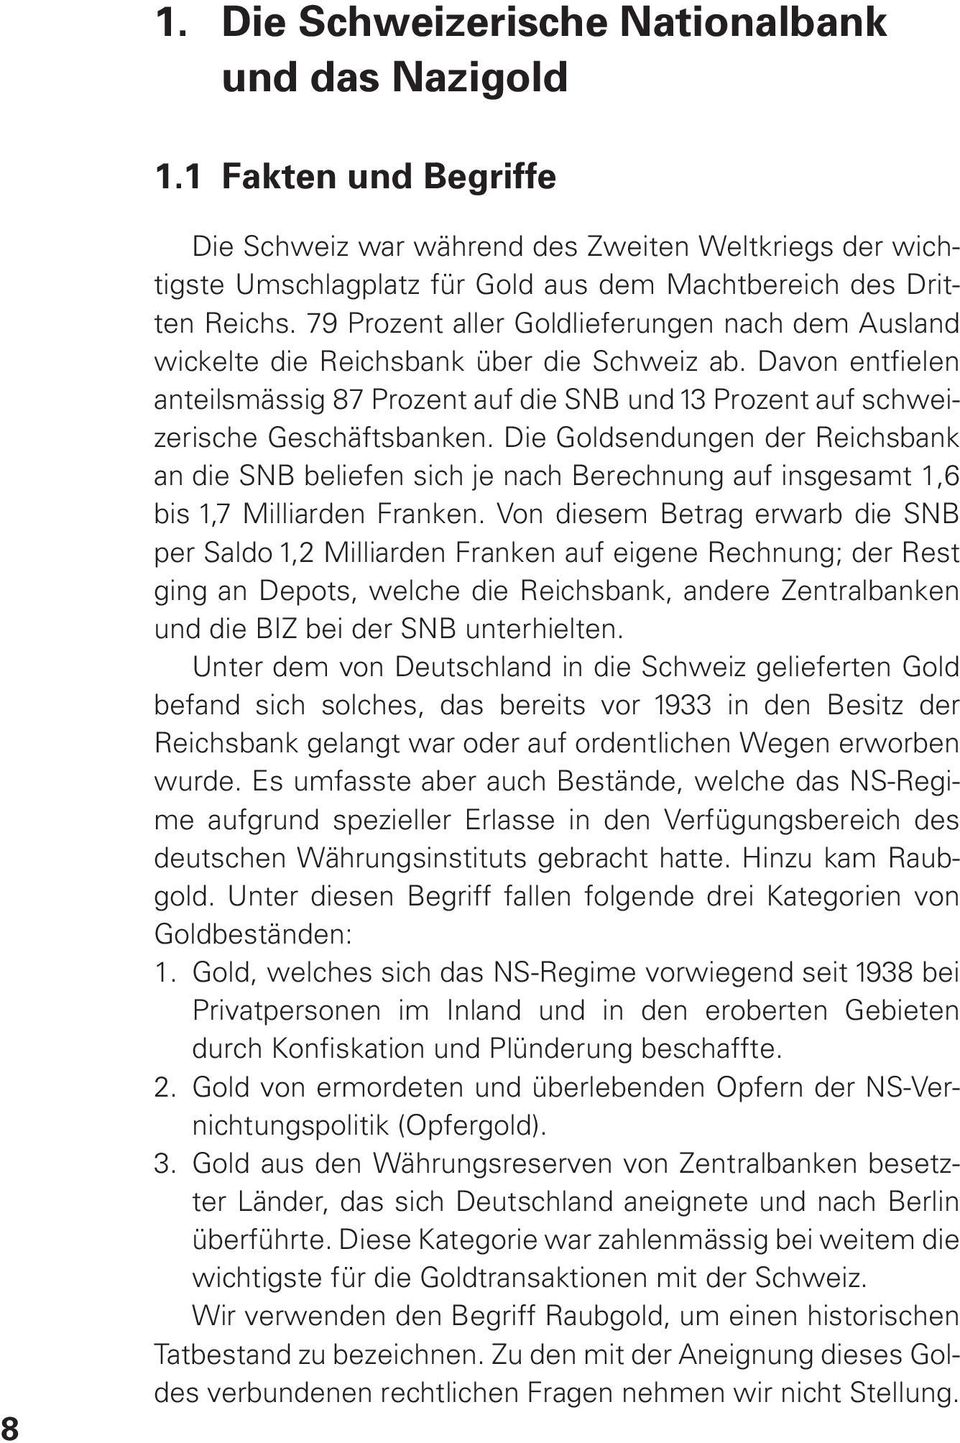 79 Prozent aller Goldlieferungen nach dem Ausland wickelte die Reichsbank über die Schweiz ab. Davon entfielen anteilsmässig 87 Prozent auf die SNB und 13 Prozent auf schweizerische Geschäftsbanken.